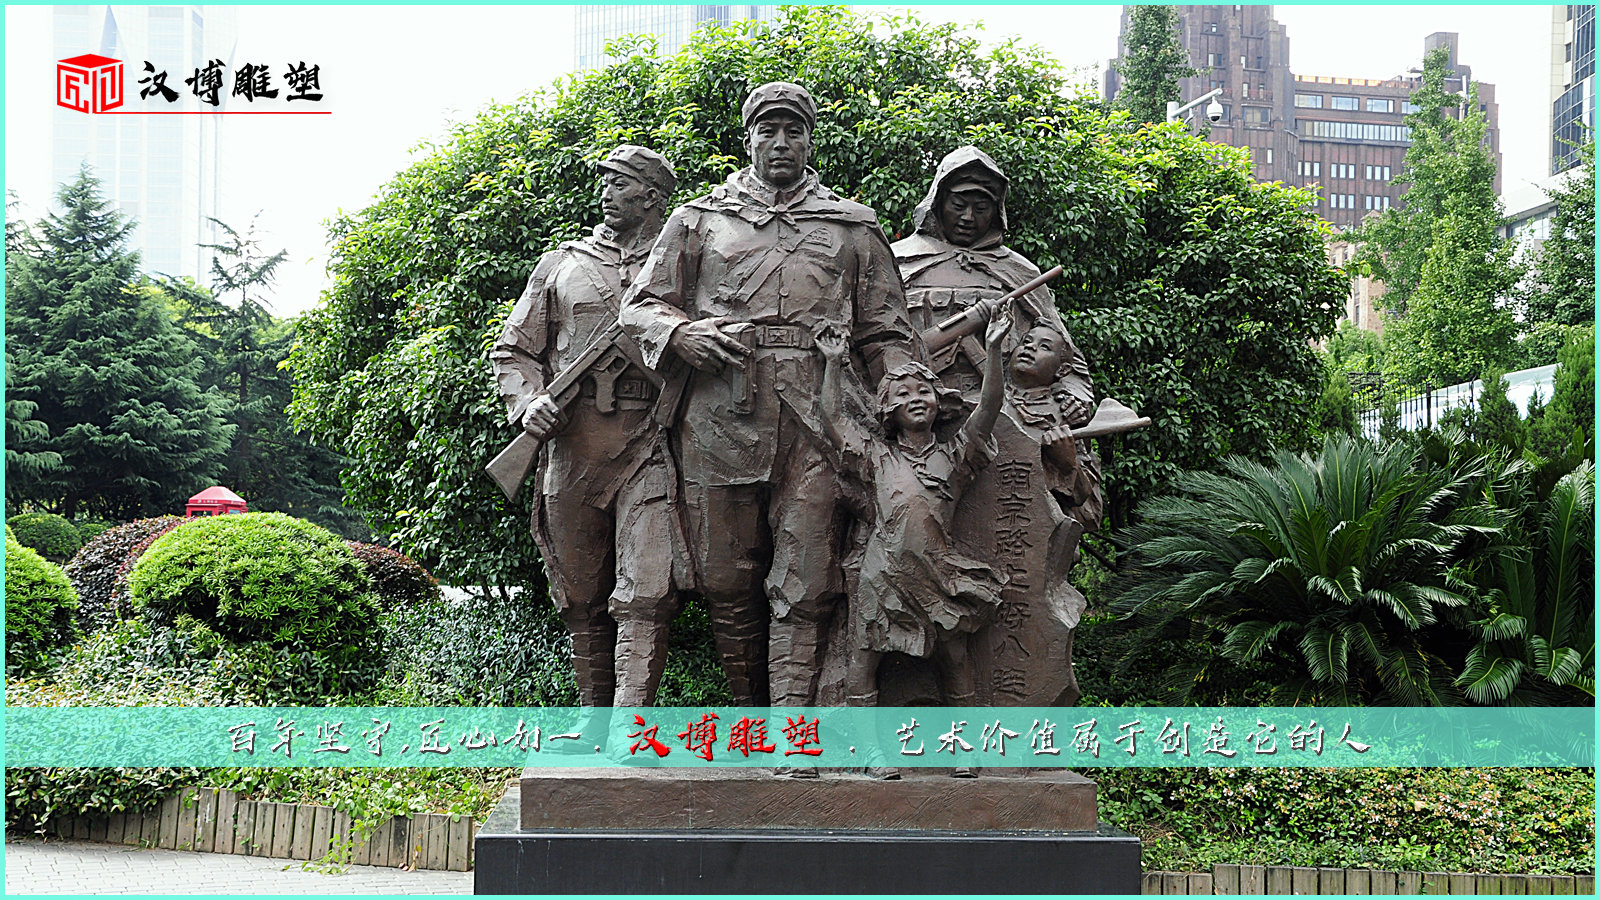 军人铜雕,人物雕像,广场景观雕塑